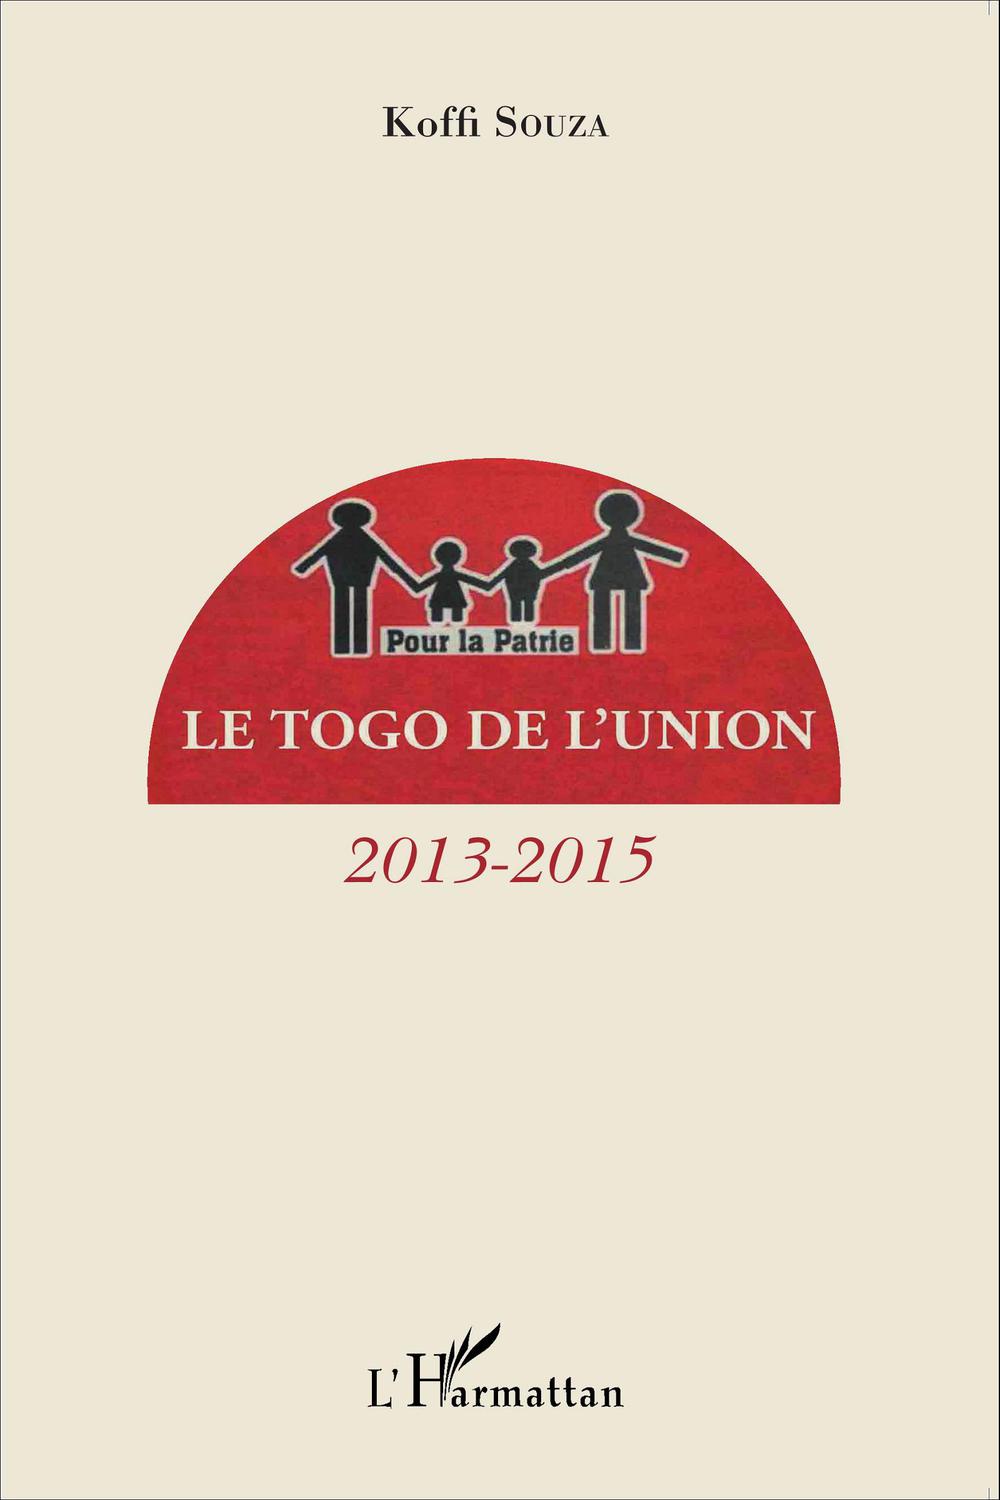 Le Togo de l'union - Koffi Souza